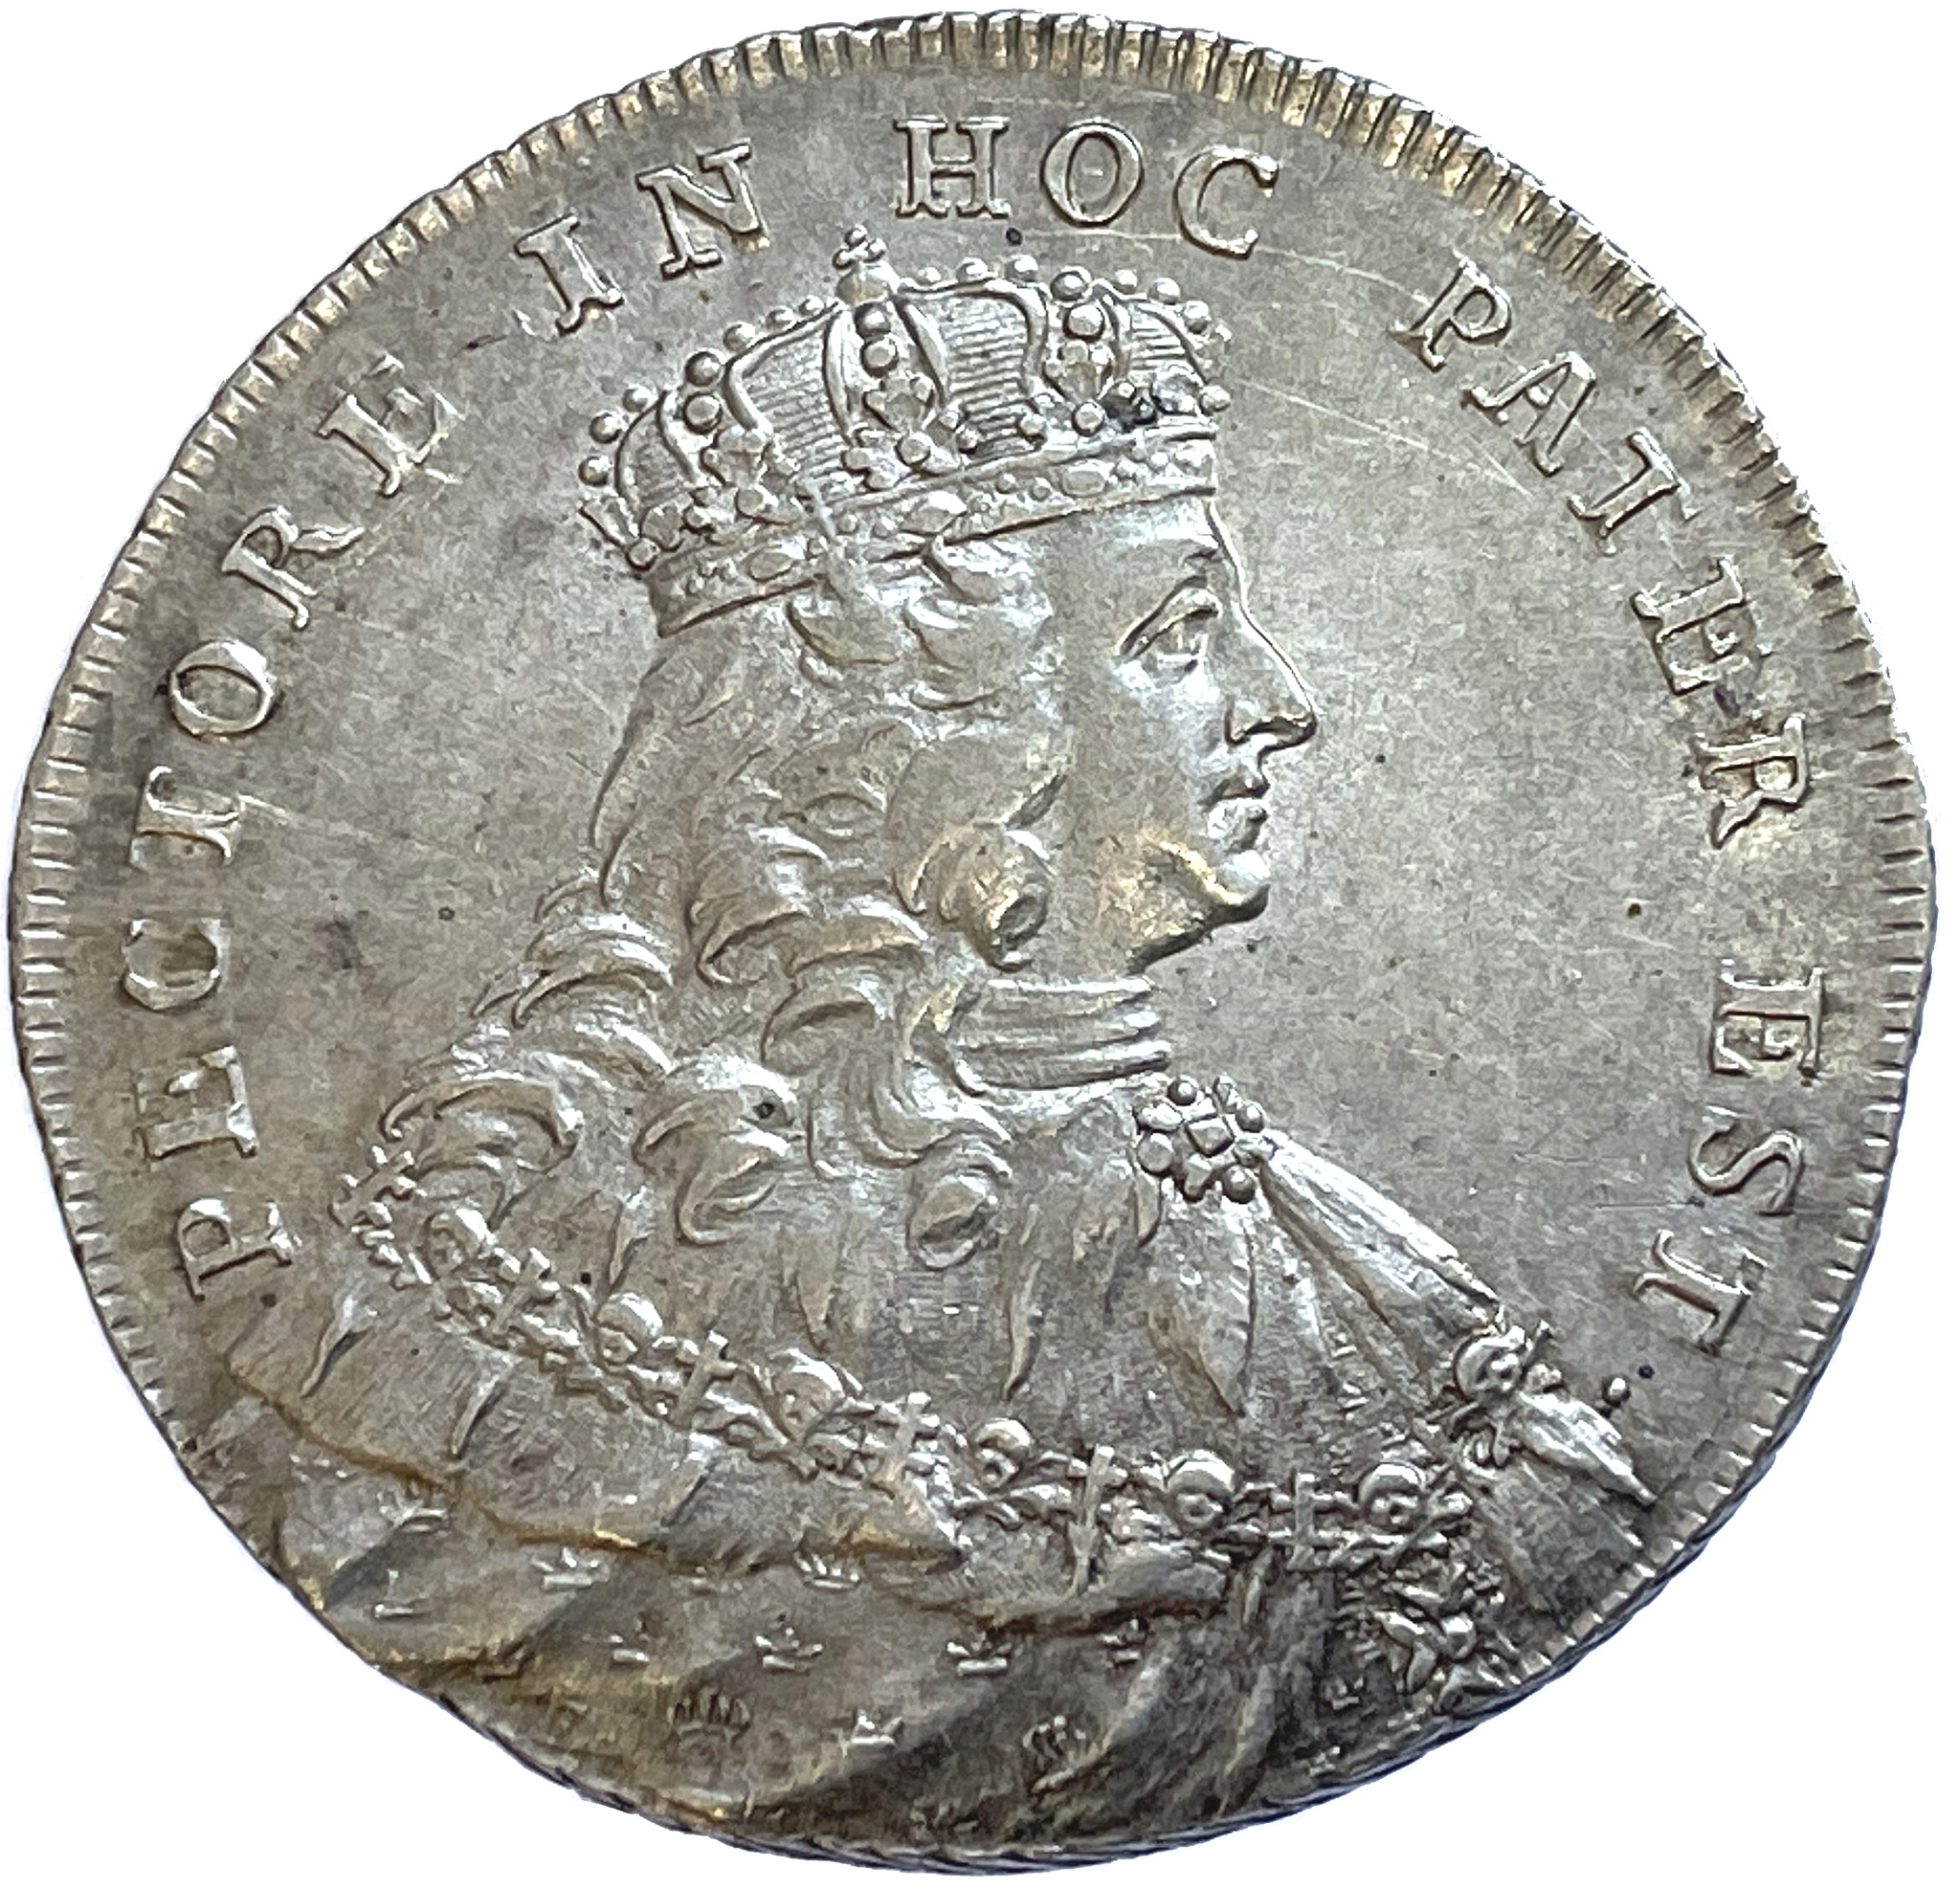 Adolf Fredrik, 2Mark 1751 - Kastmynt till konungens kröning - Tilltalande exemplar med skärpa i porträttet